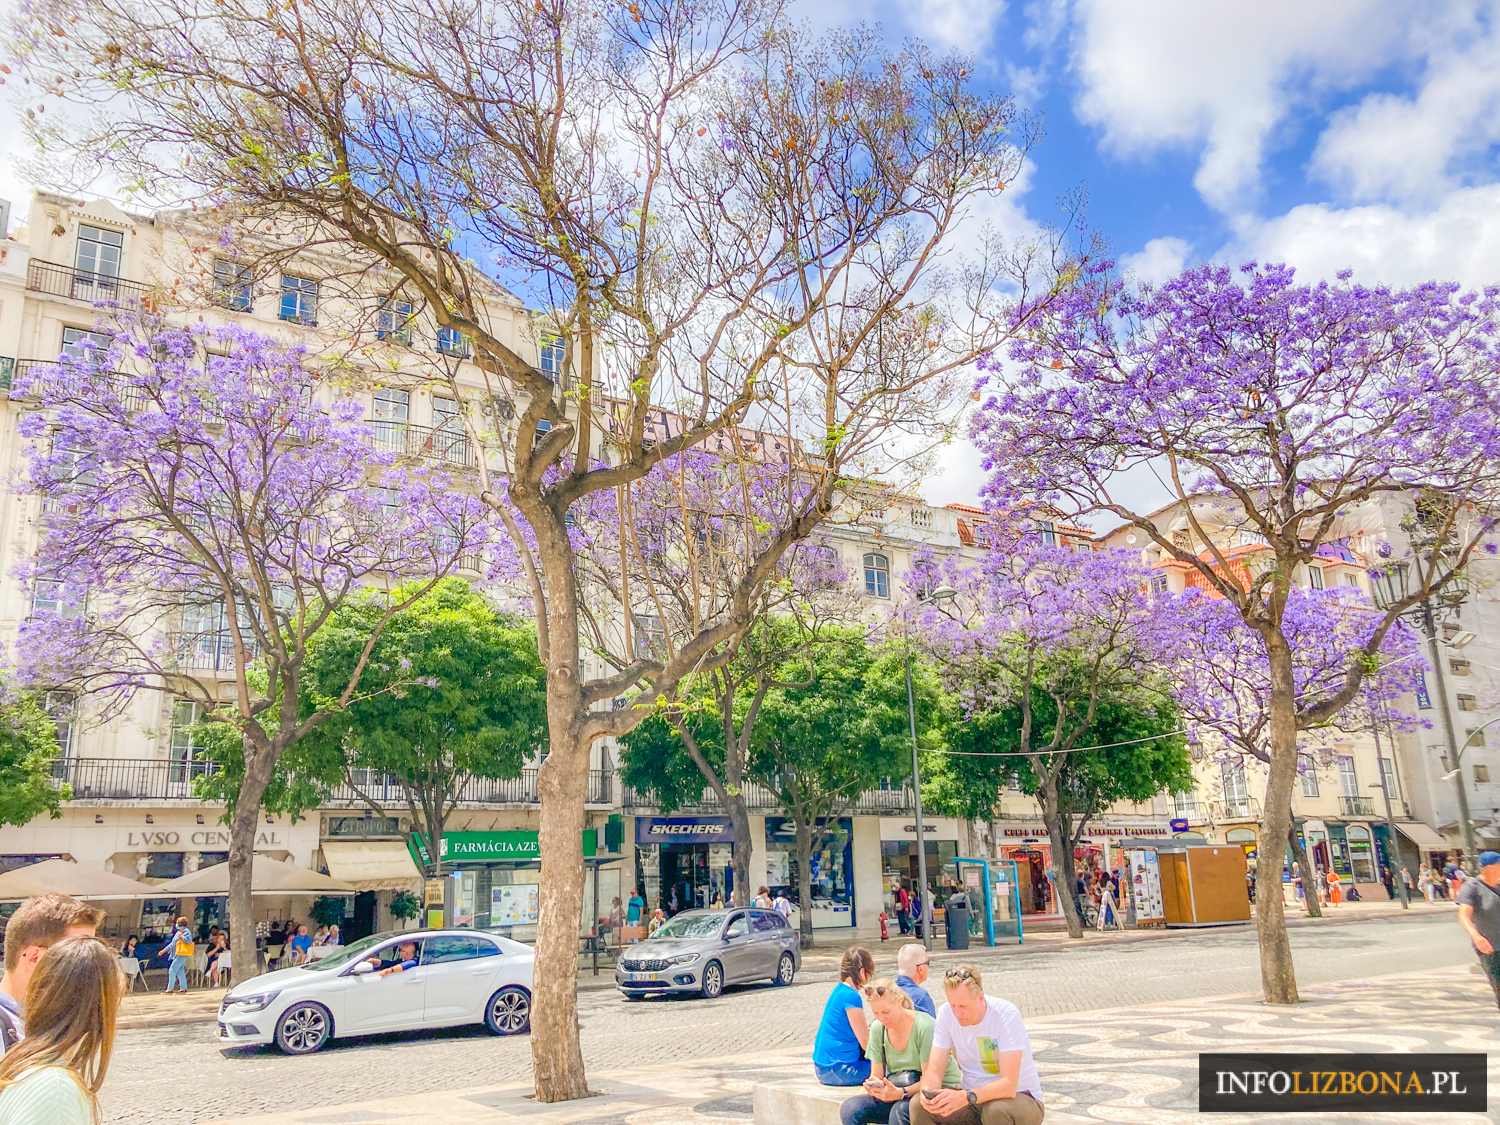 Jakaranda mimozolistna jacaranda Lizbona Lisbona Lisbon Lisboa fioletowo drzewo kwitnienie kwiaty Portugalia Polski Przewodnik po Lizbonie i Portugalii Wideo Zwiedzanie